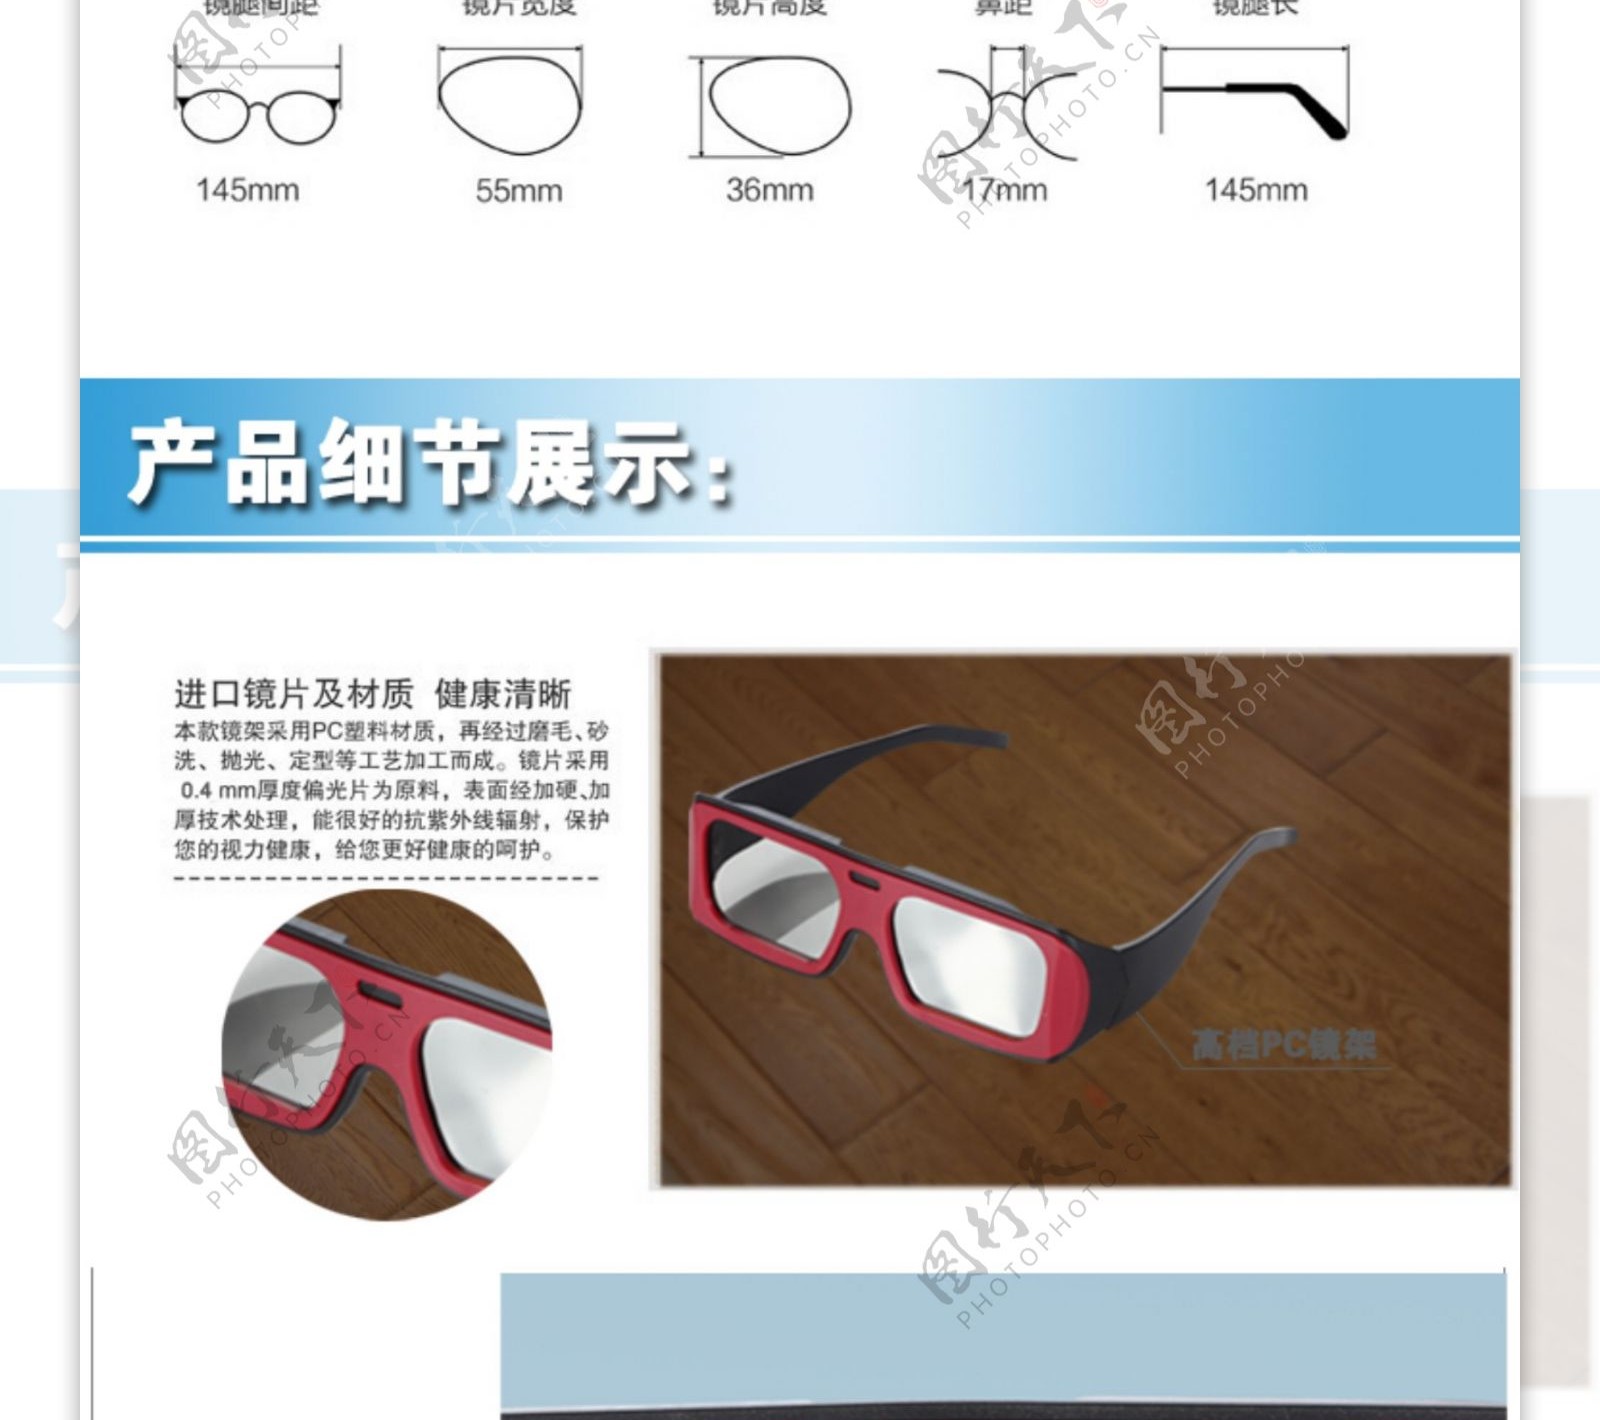 简洁大方3D眼镜详情图图片